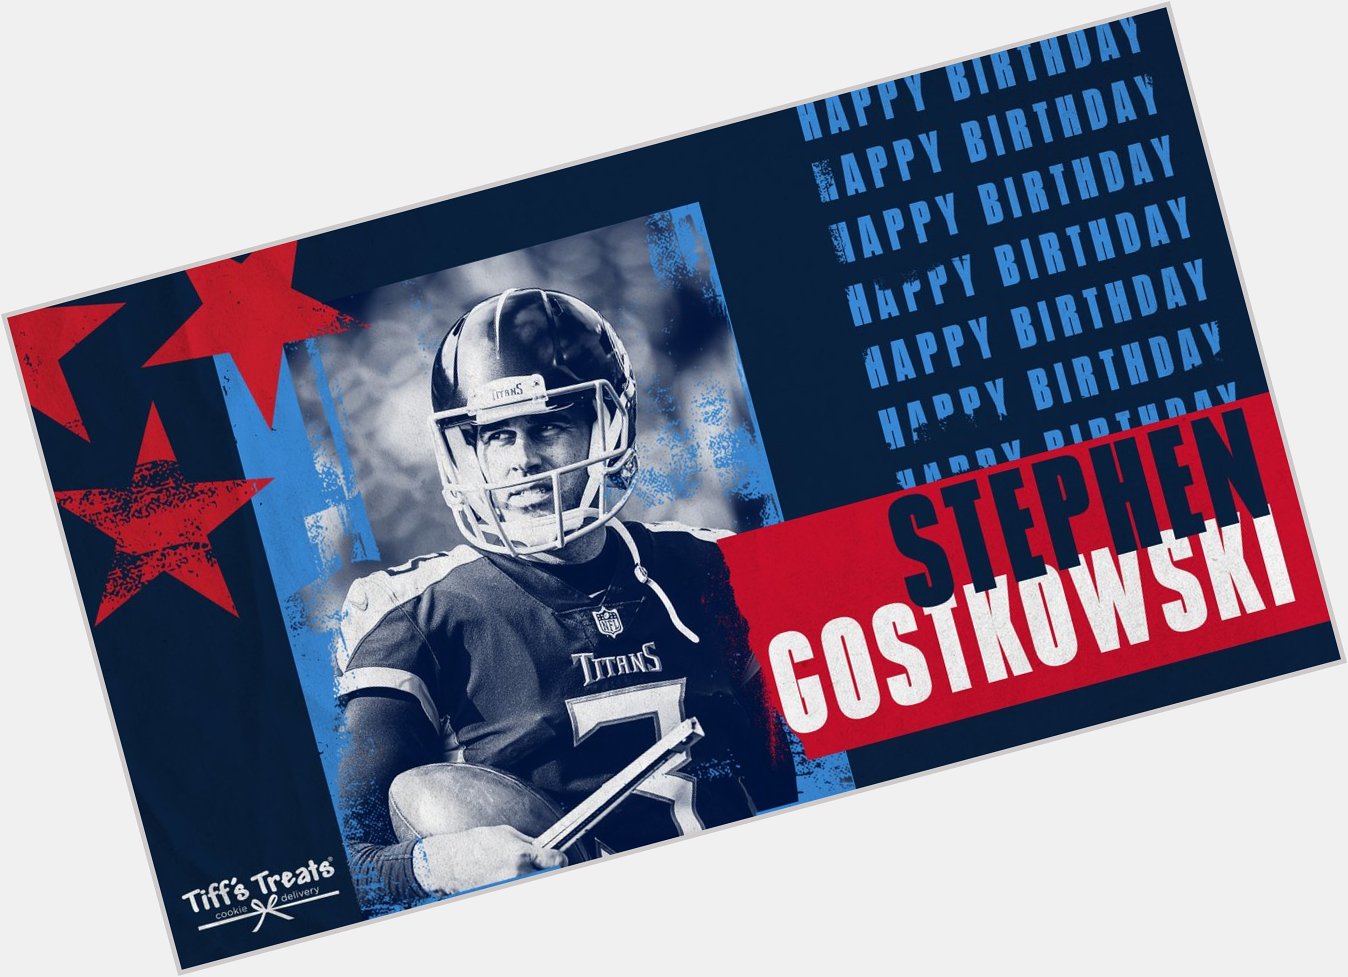 Happy birthday Stephen Gostkowski!   